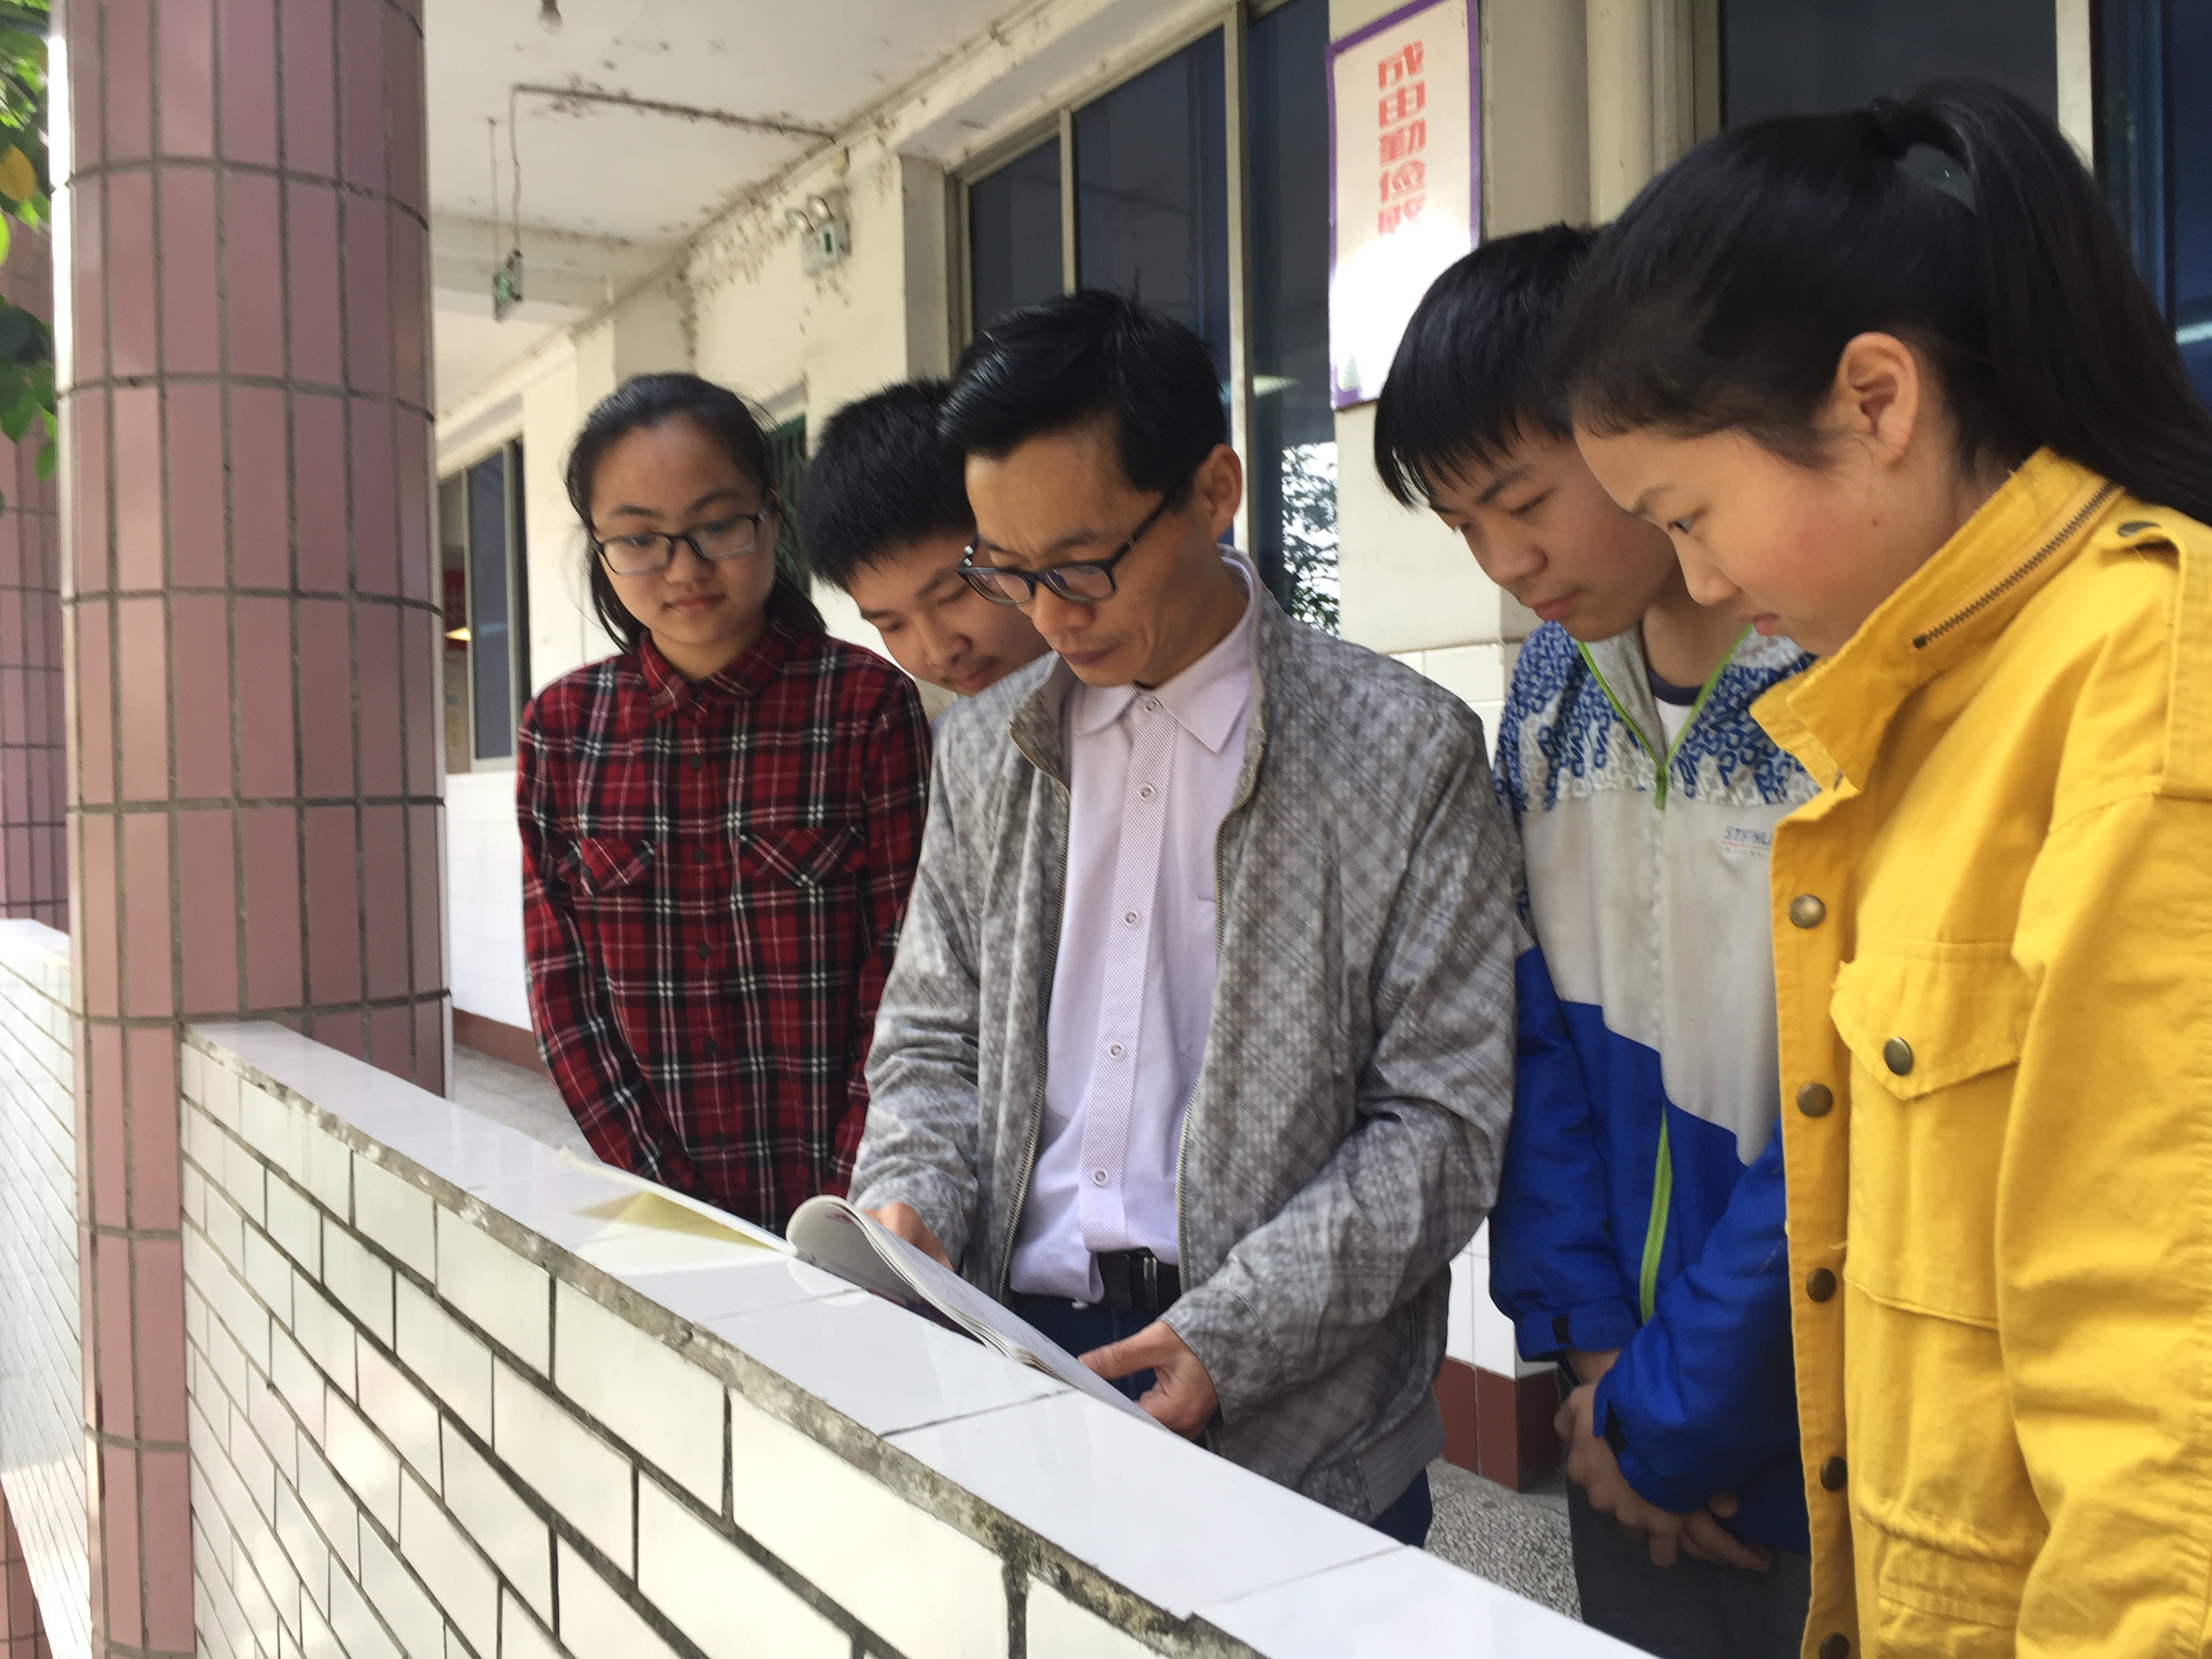 李正江老师与学生在一起在三十年的工作中,学校安排李正江老师担任